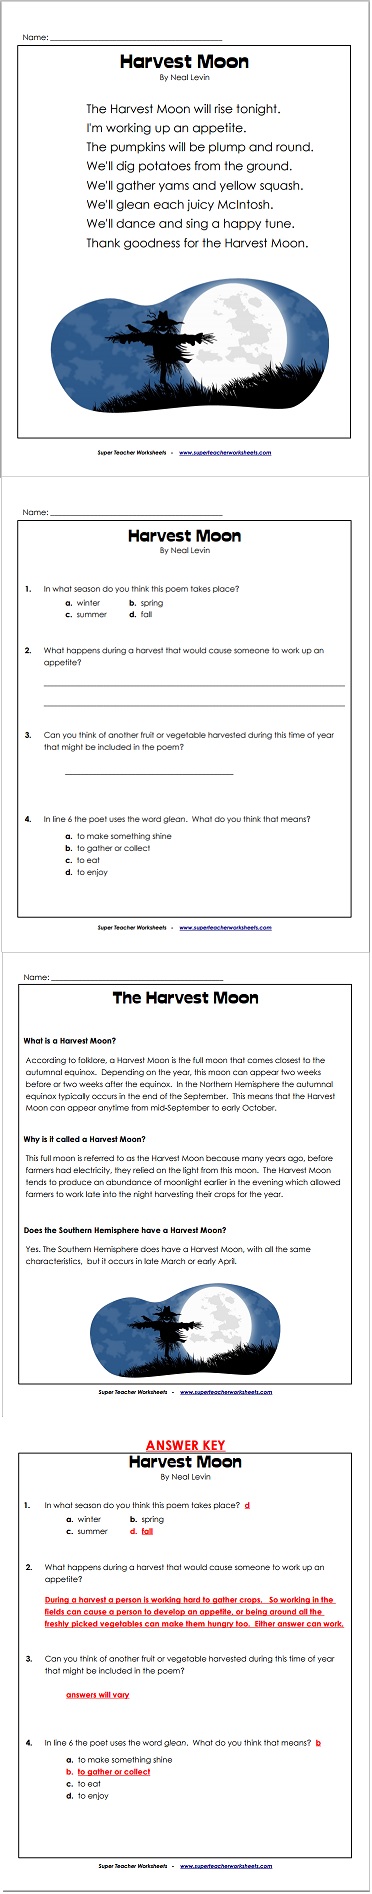 Harvest Moon Poem